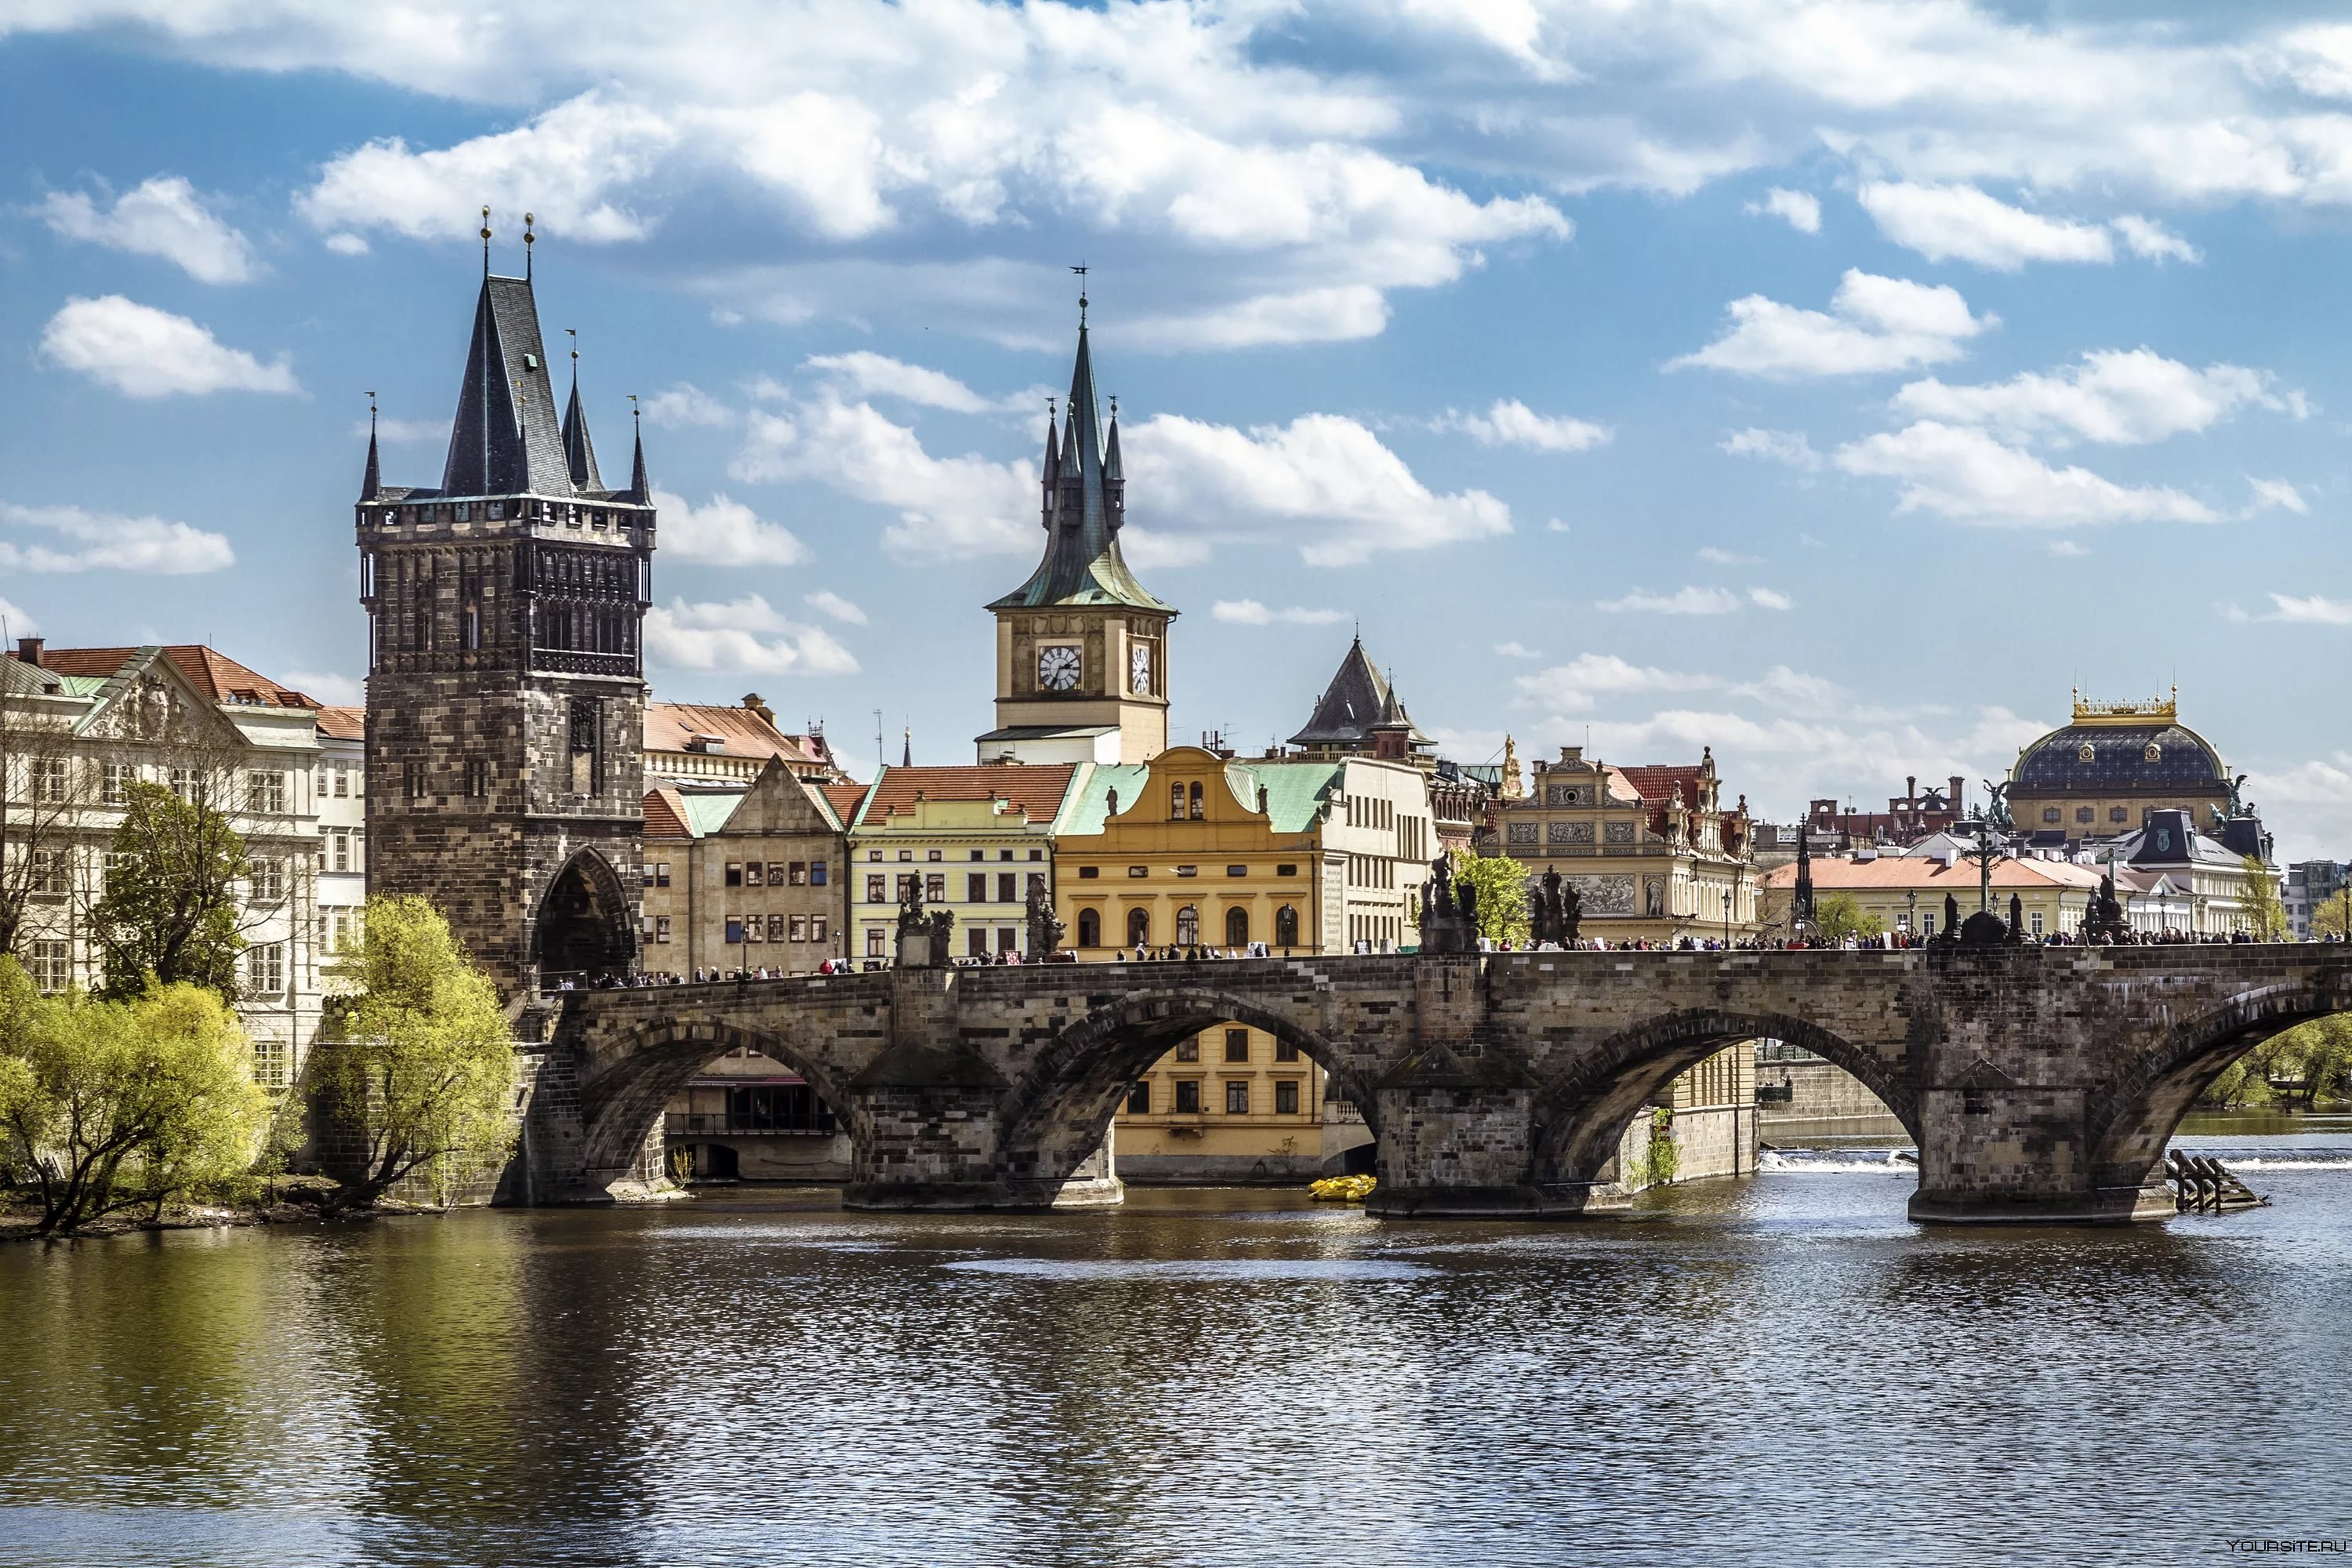 Чешские власти задумались над снижением НДС при покупке недвижимости